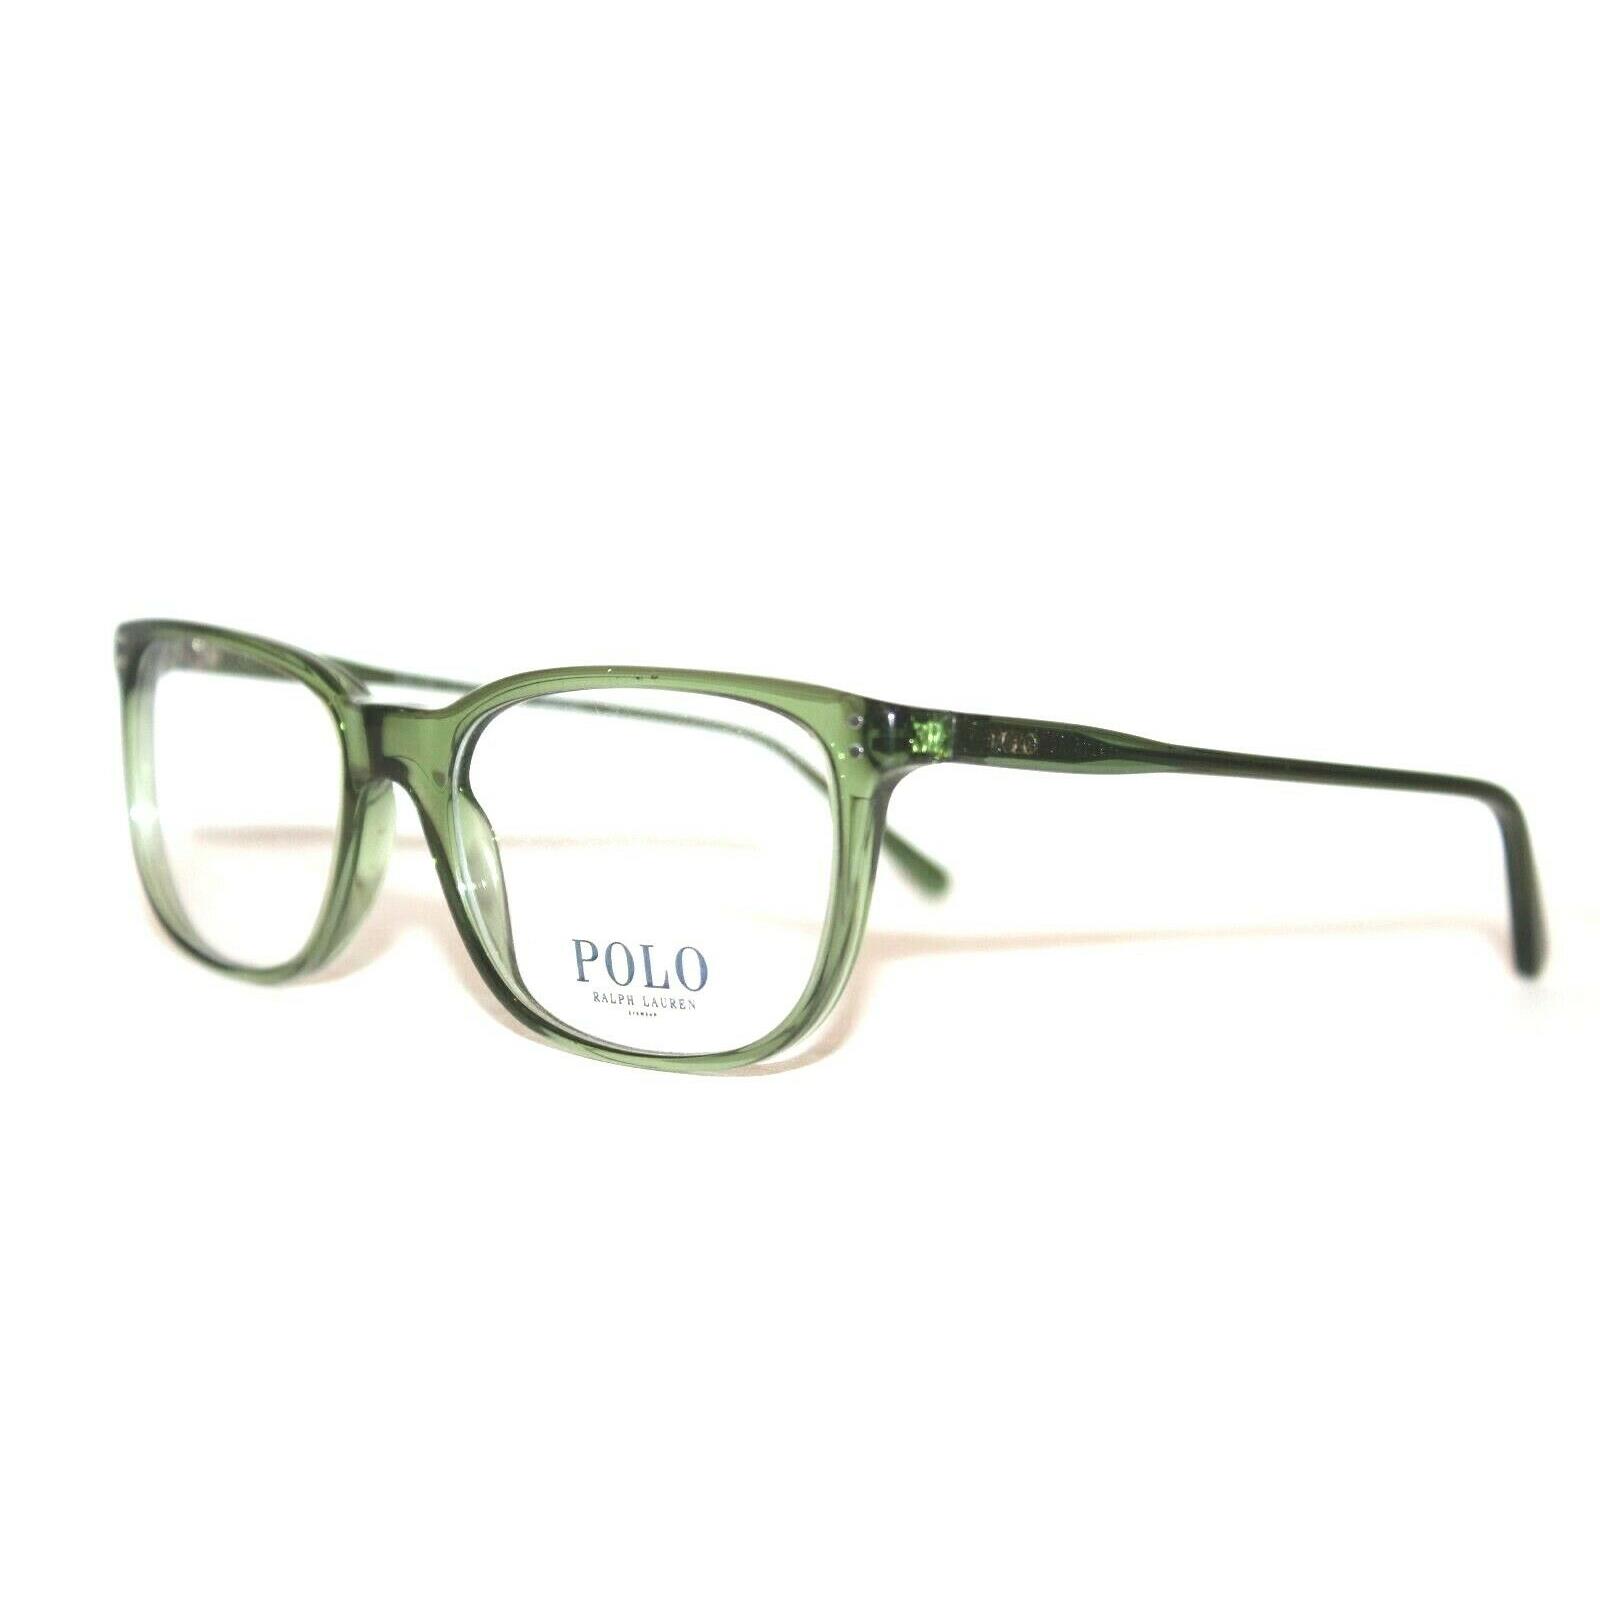 Polo Ralph Lauren PH2156 5036 Green Eyeglasses 53-18-140 MM